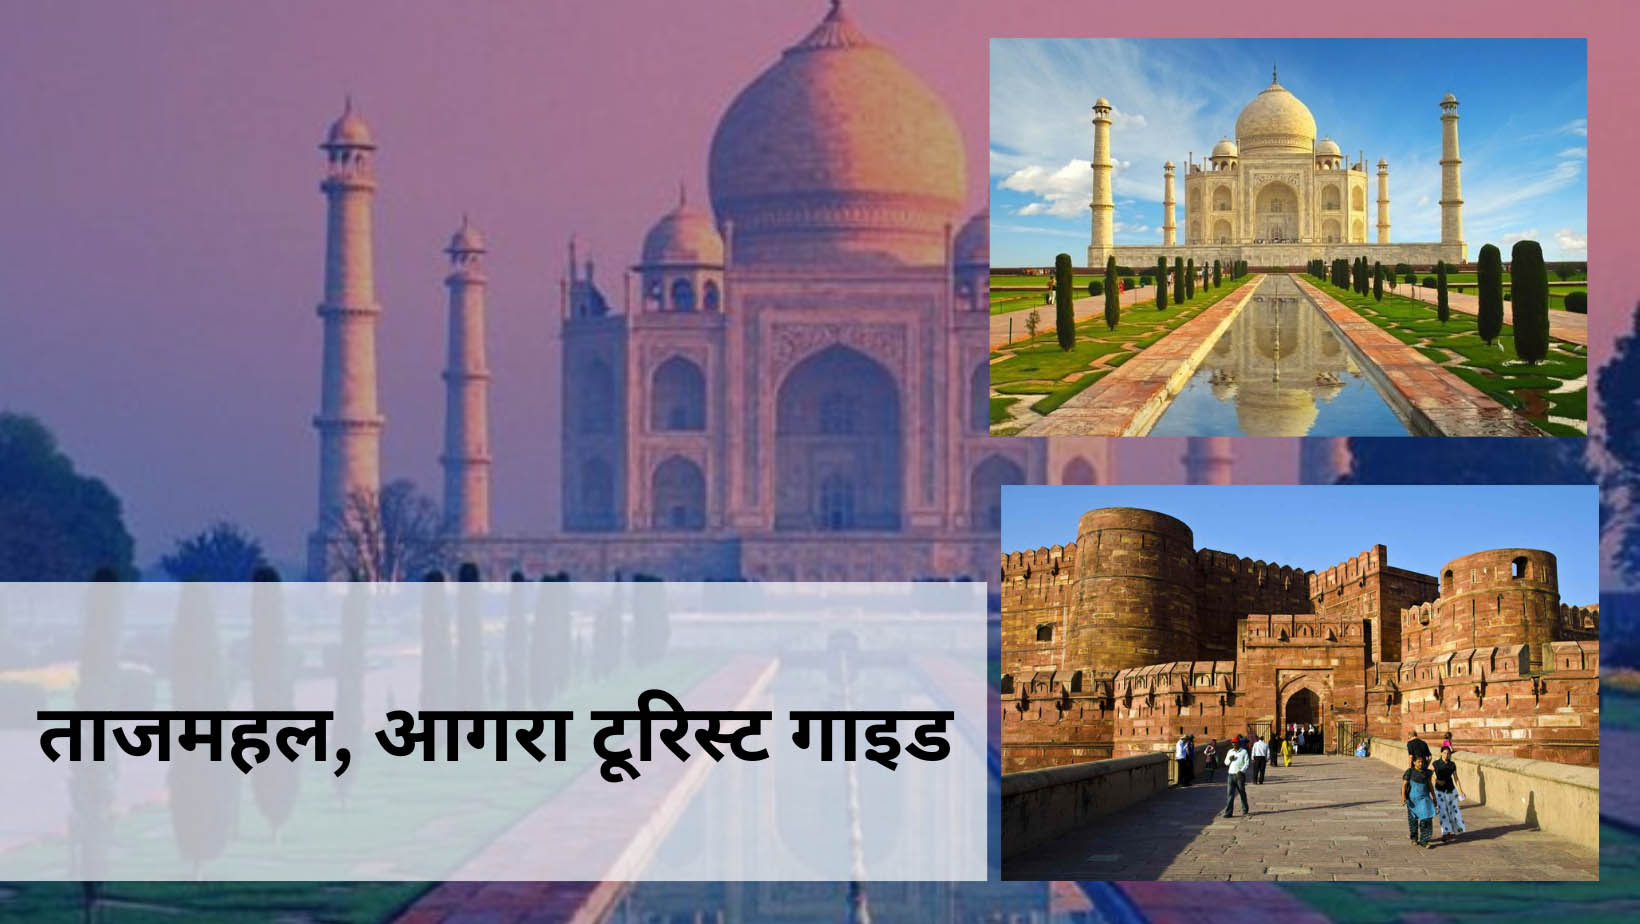 ताजमहल आग्रा, भारत टूरिस्ट गाइड Taj Mahal, Agra